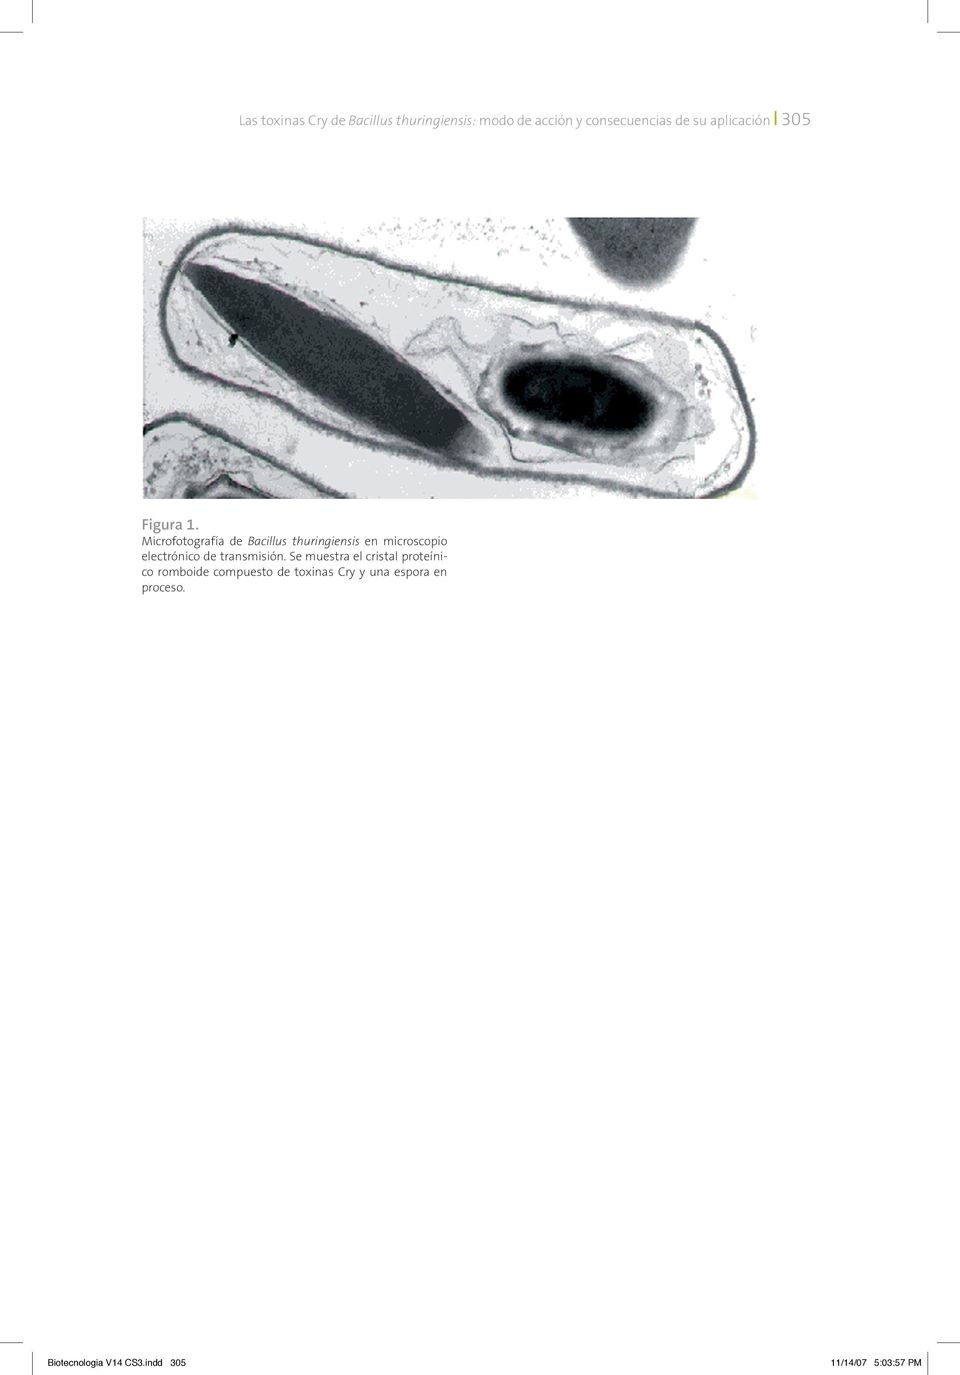 Microfotografía de Bacillus thuringiensis en microscopio electrónico de